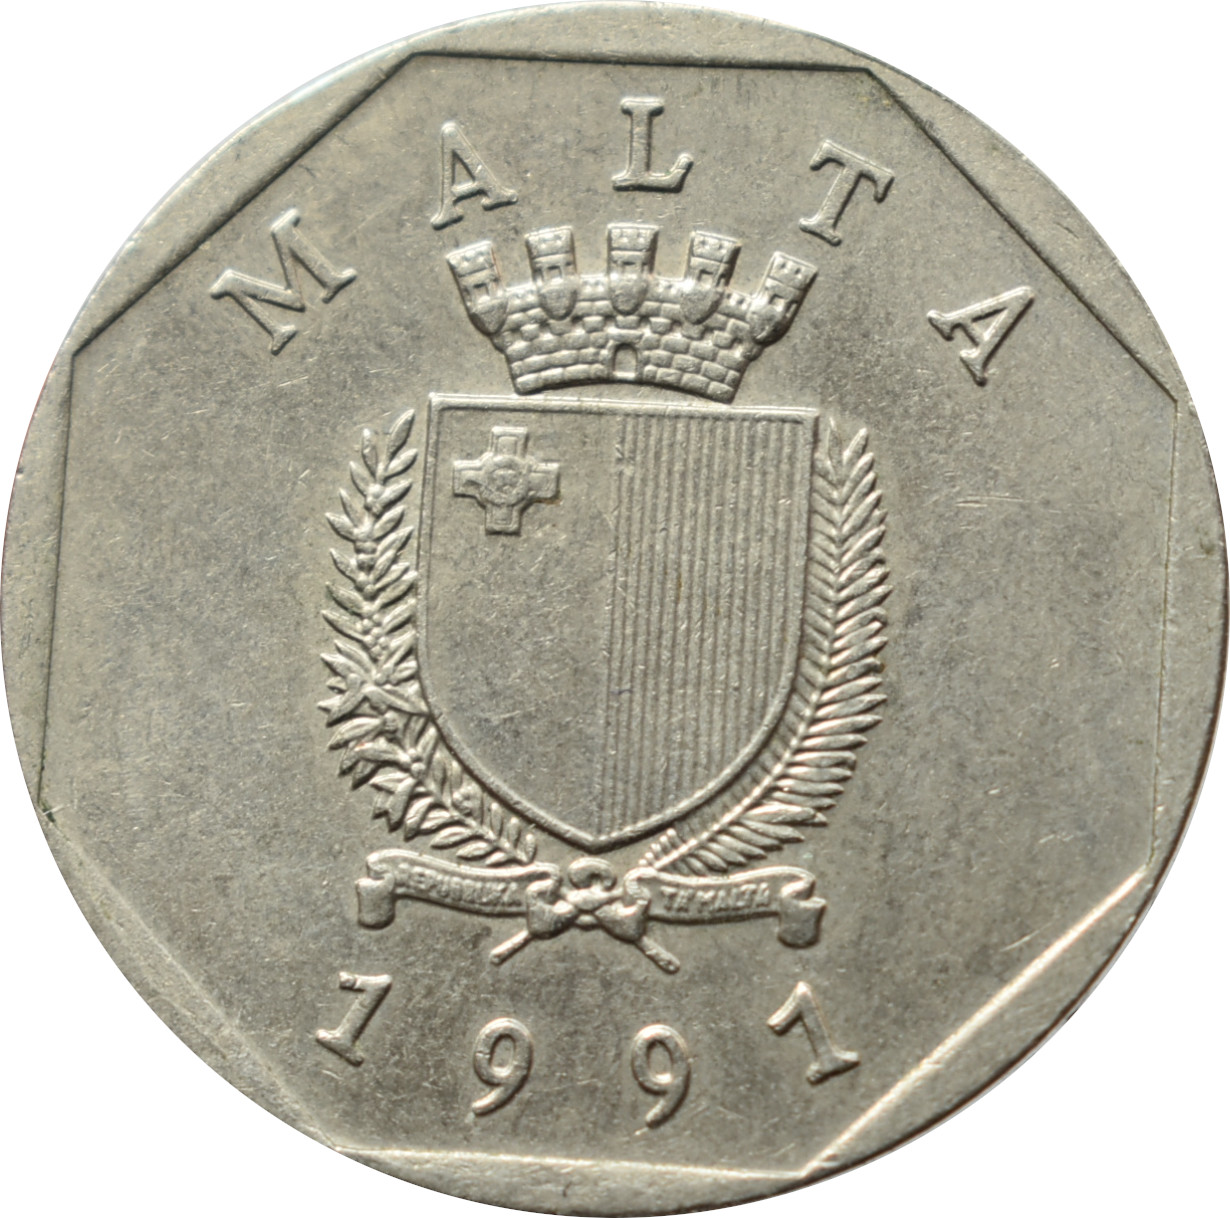 Malta 50 Cents 1991